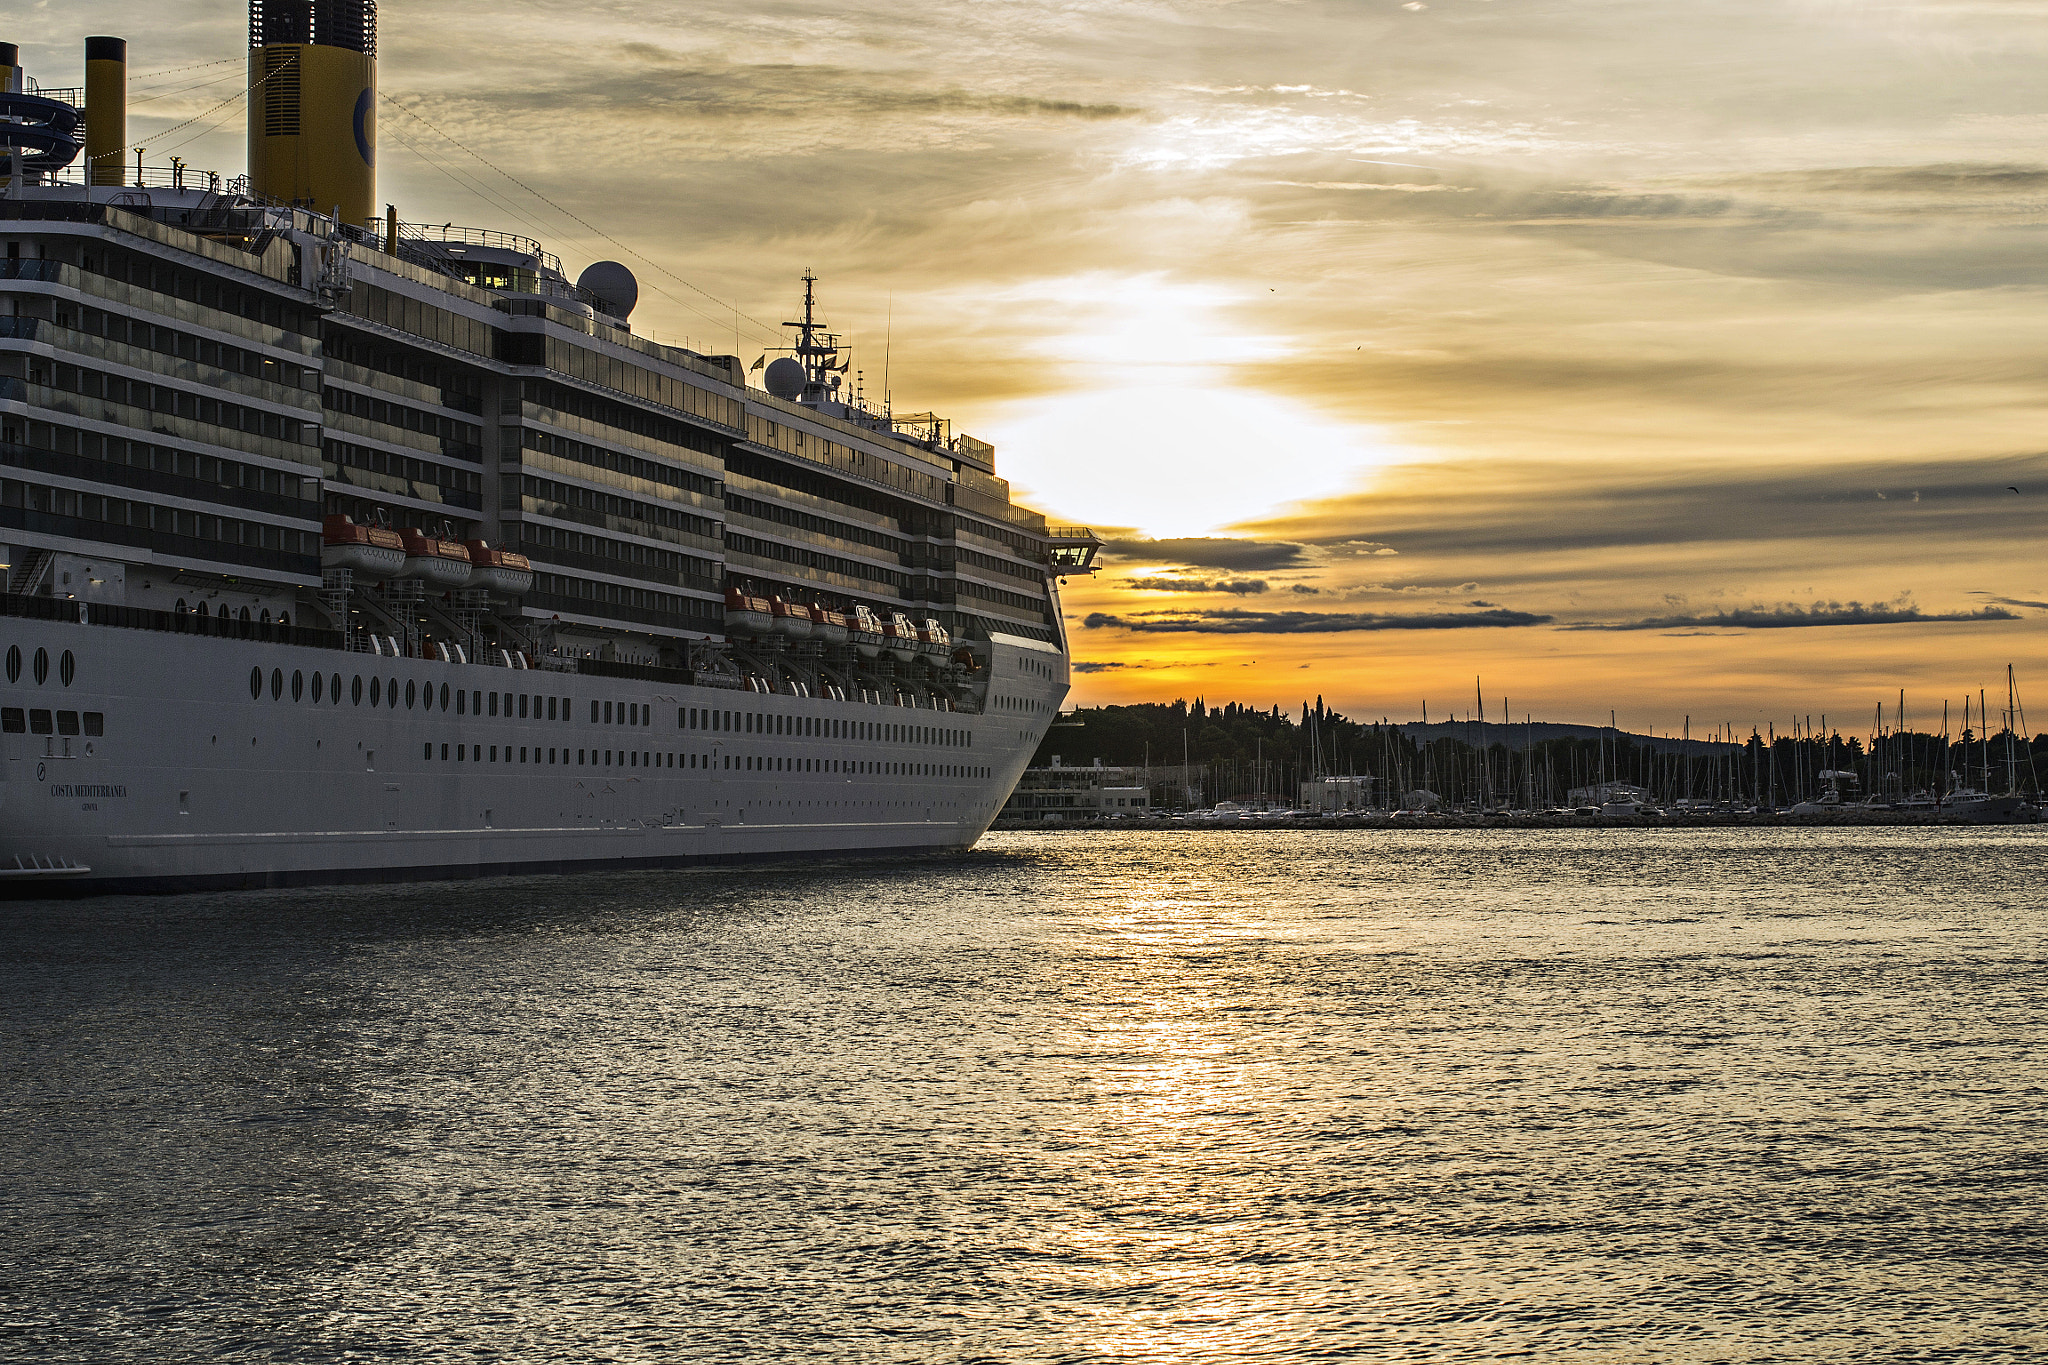 Nikon D3100 sample photo. Cruise ship in sunrise photography